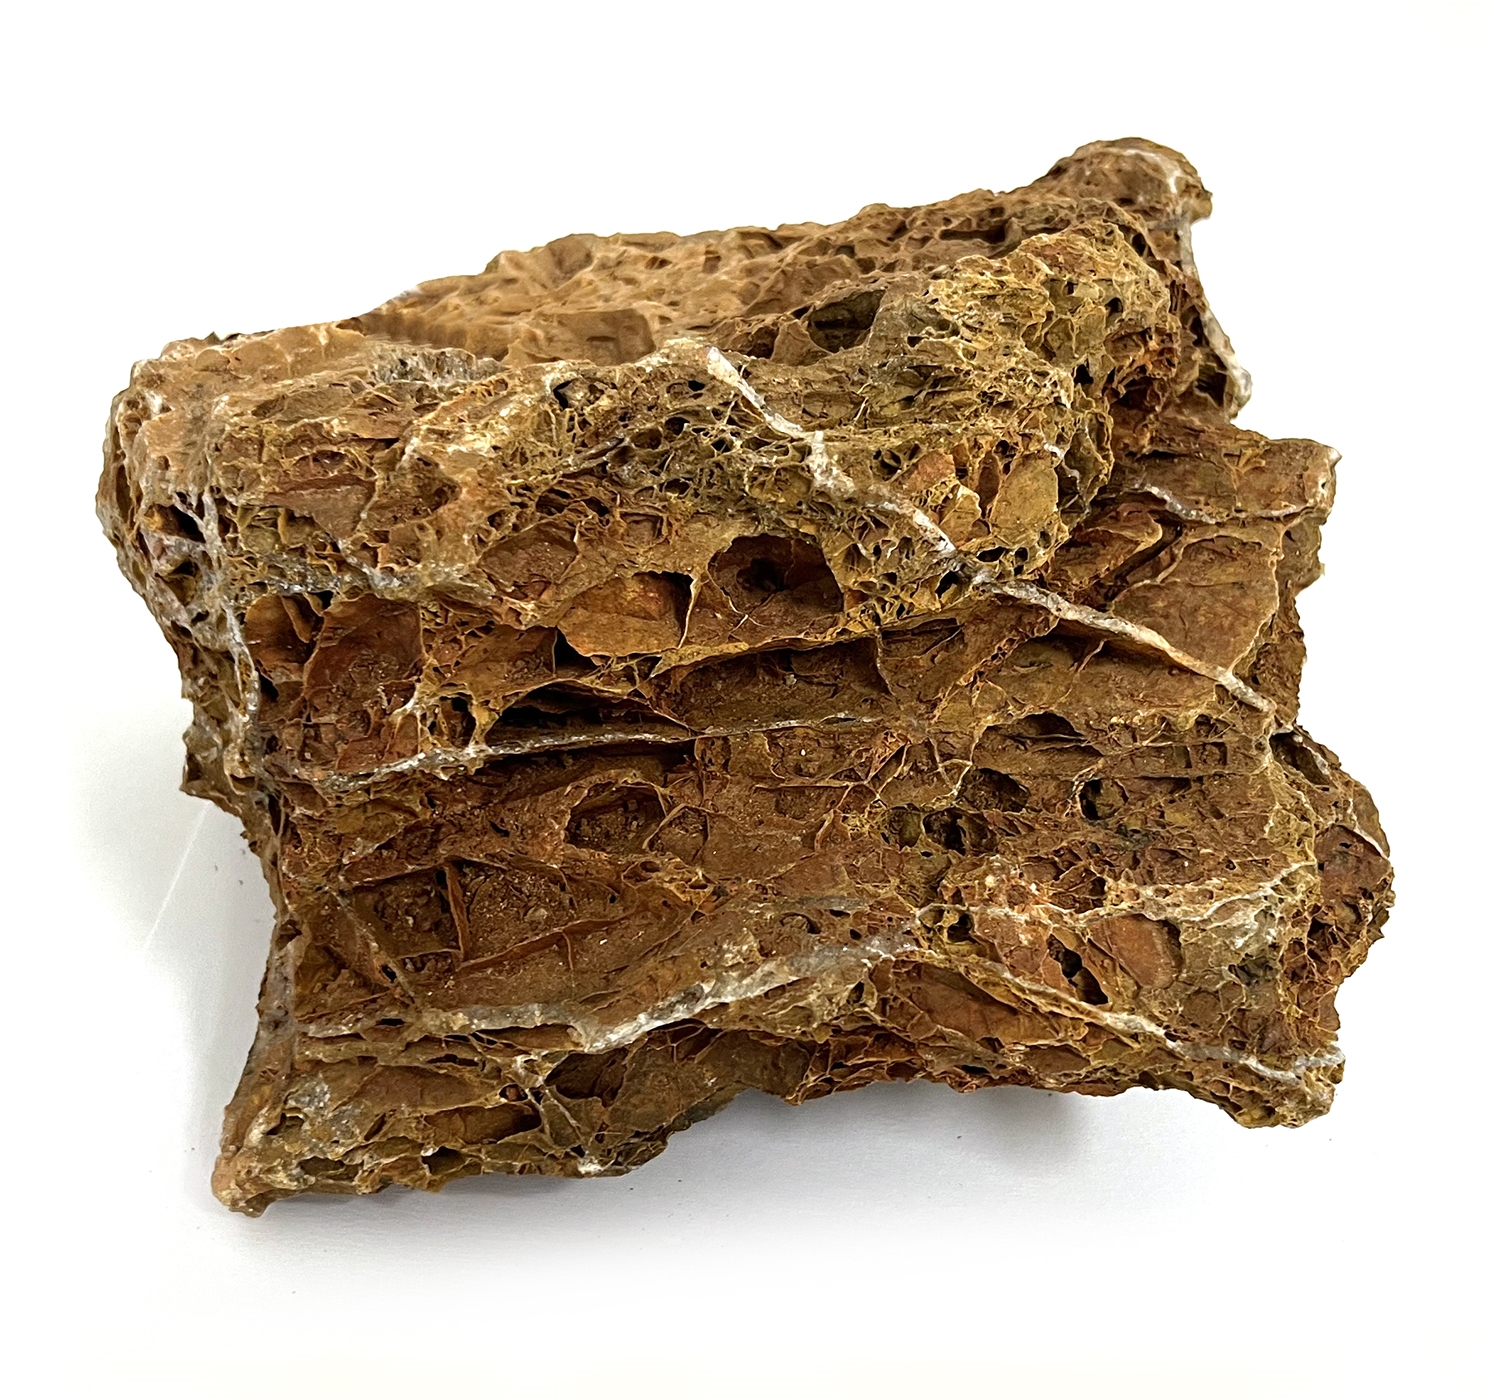 MACENAUER Dekorační kámen Maple Leaf Rock M, 2,3 - 2,7 kg